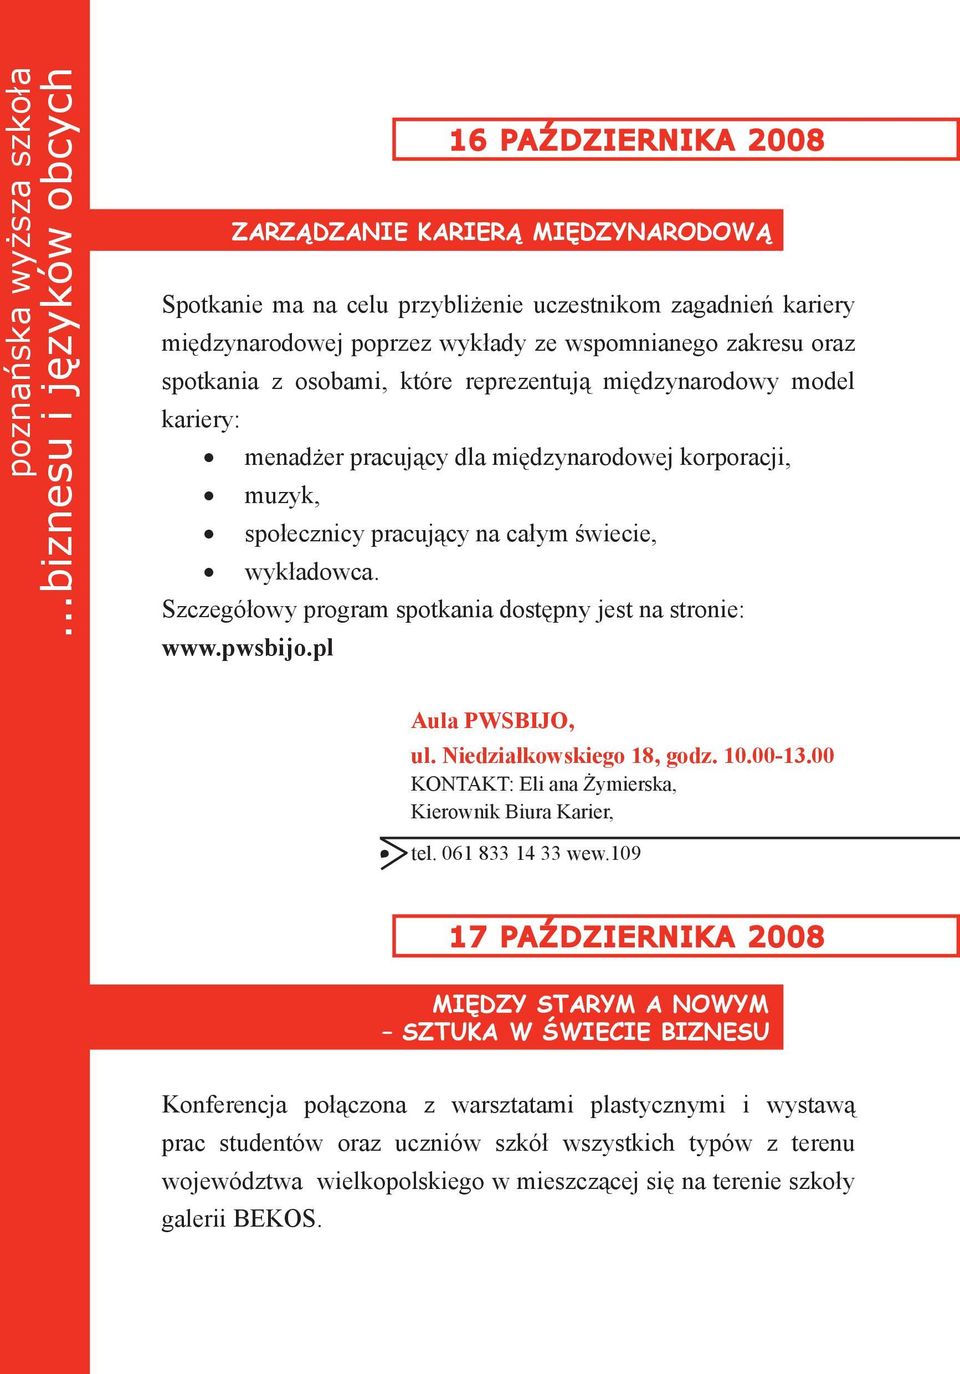 Szczegółowy program spotkania dostępny jest na stronie: www.pwsbijo.pl ul. Niedziałkowskiego 18, godz. 10.00-13.00 KONTAKT: Eli ana Żymierska, tel. 061 833 14 33 wew.